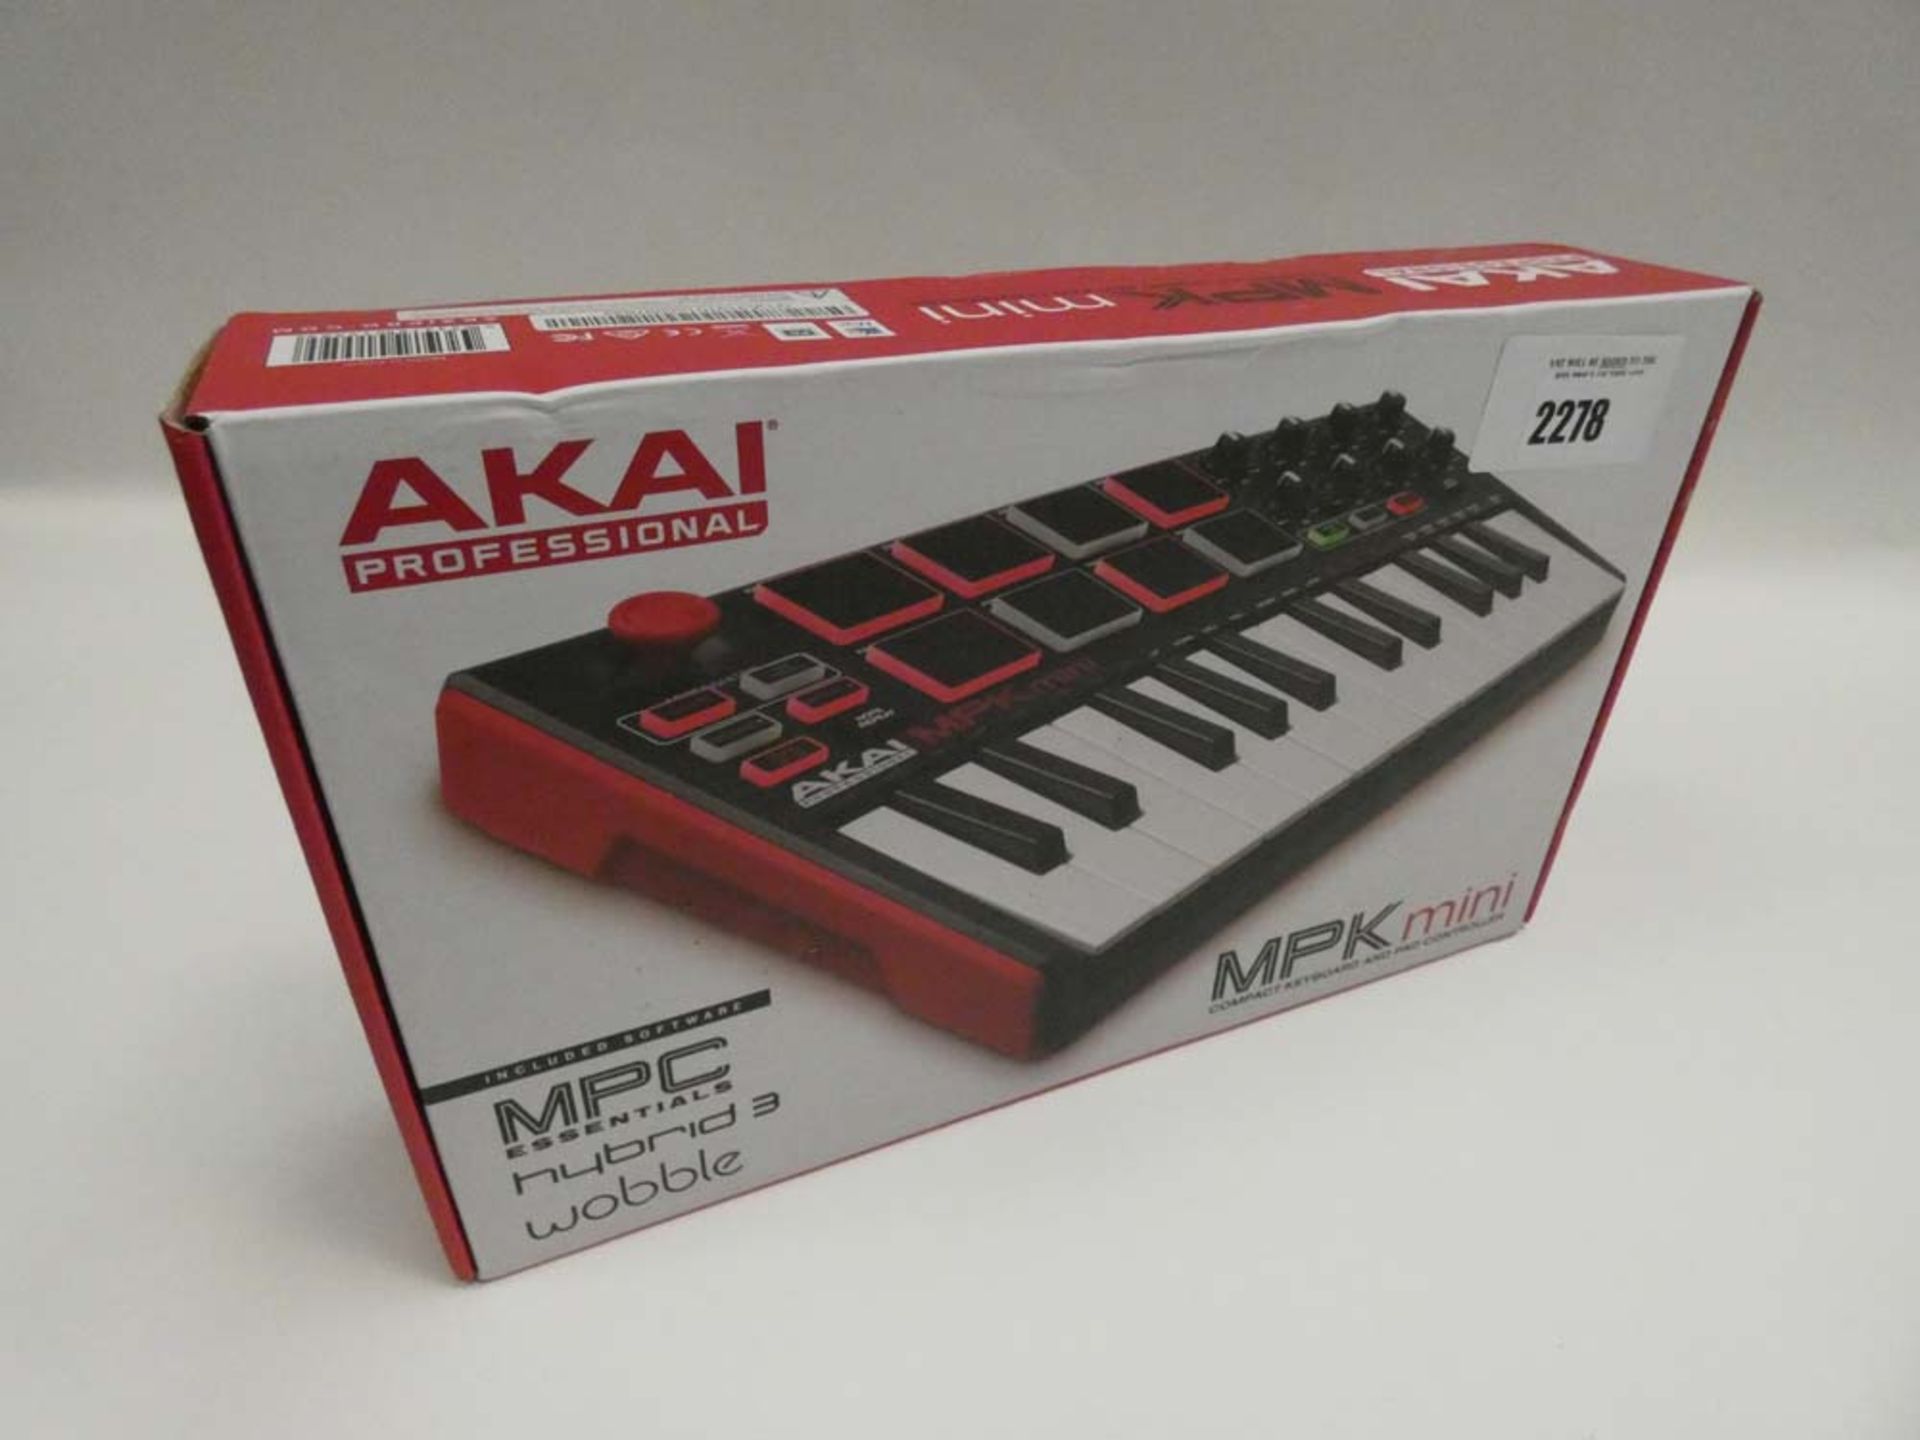 Akai MPK Mini compact keyboard and pad controller